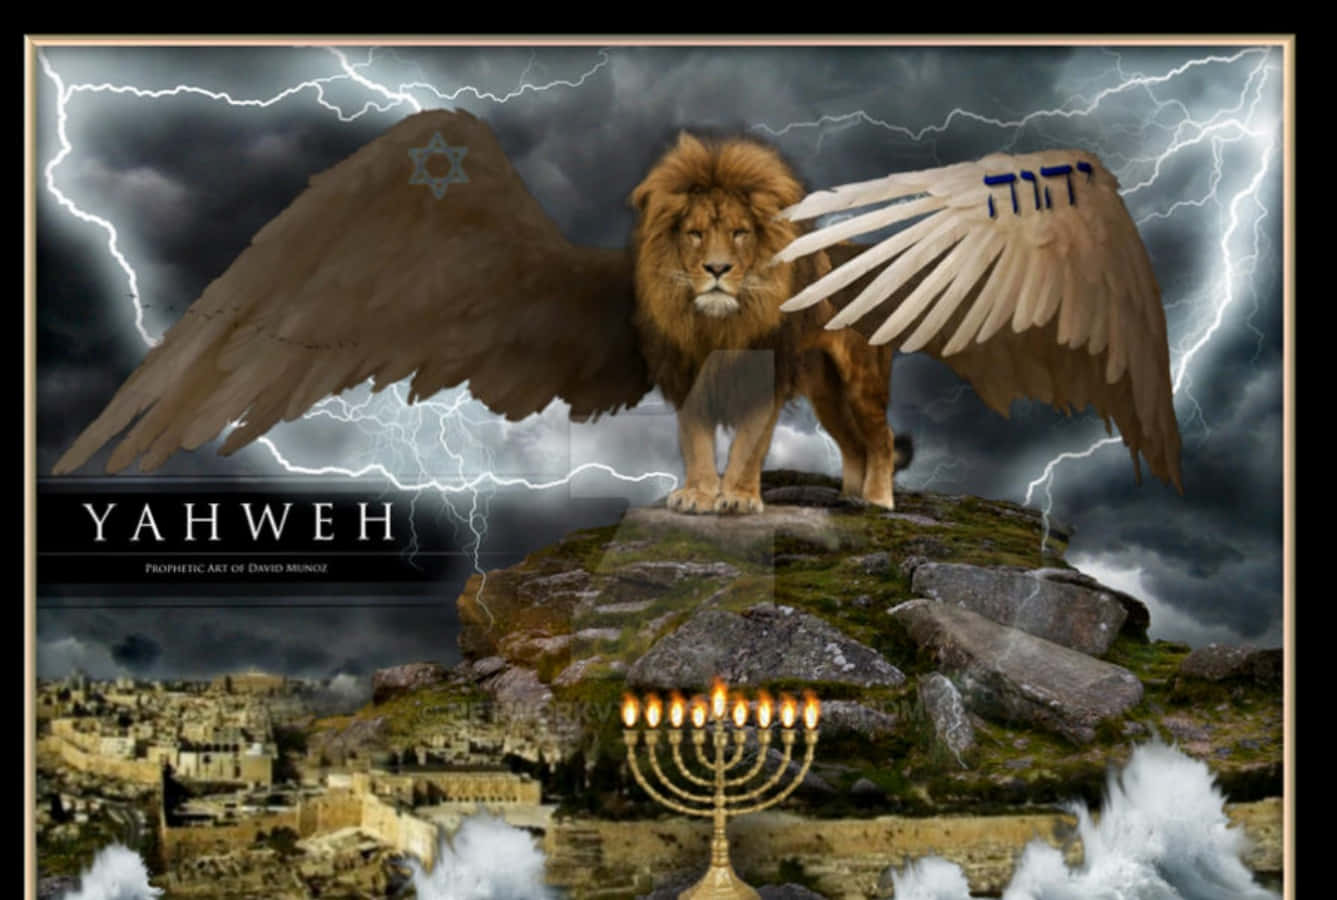 Teachings of Yahweh